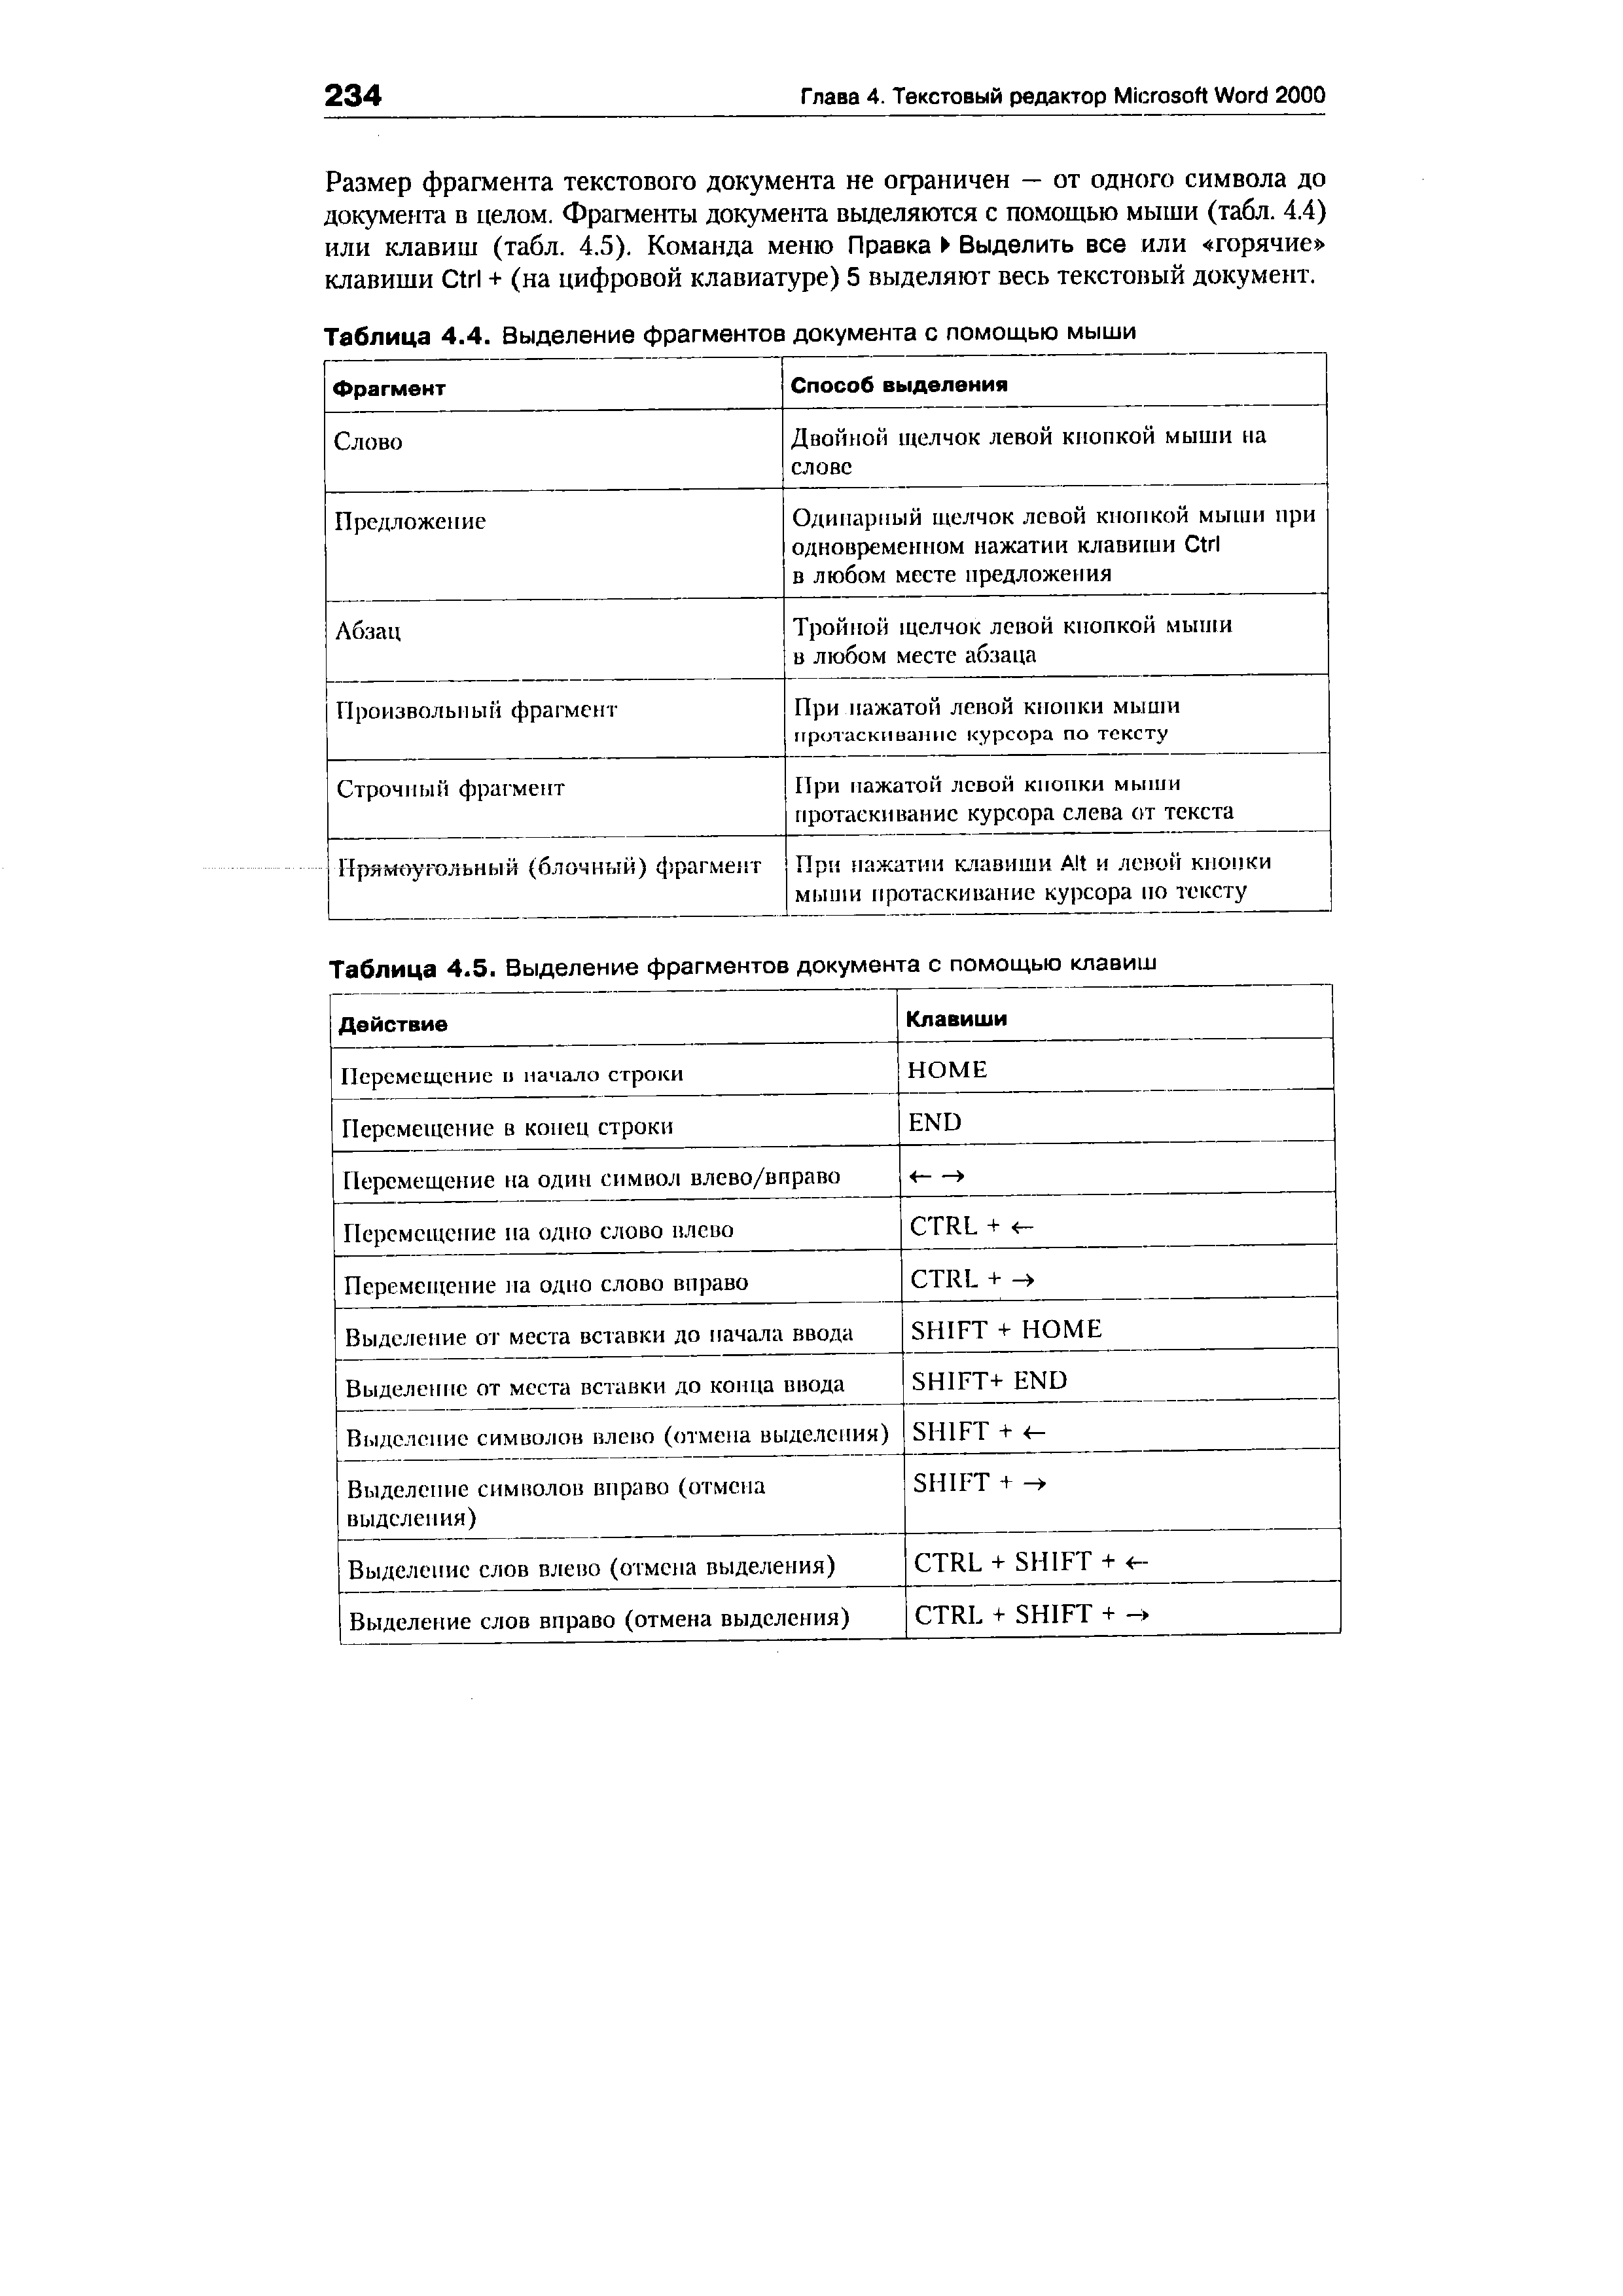 Таблица 4.5. Выделение фрагментов документа с помощью клавиш
